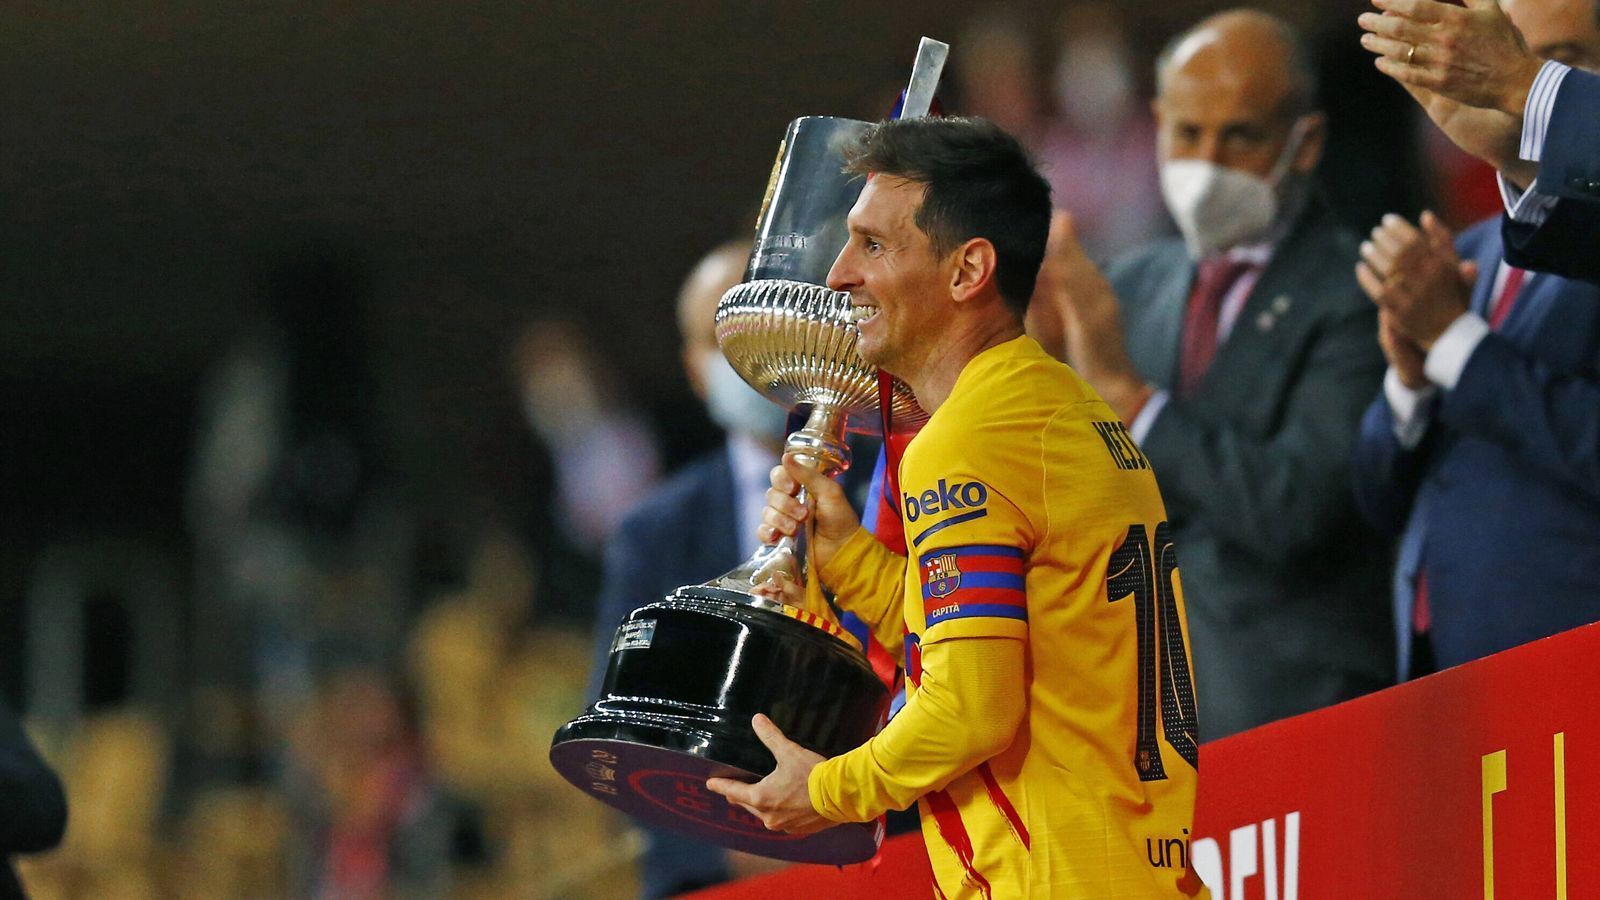 
                <strong>2009: Erstmals Spanischer Pokalsieger </strong><br>
                In der Saison 2008/09 gewinnt Messi mit dem FC Barcelona erstmals den spanischen Liga-Pokal. Der Stürmer schießt in acht Spielen sechs Tore und gibt eine Vorlage. Insgesamt hat Messi die Copa del Rey mit Barca sieben Mal gewonnen (2009, 2012, 2015, 2016, 2017, 2018, 2021).
              